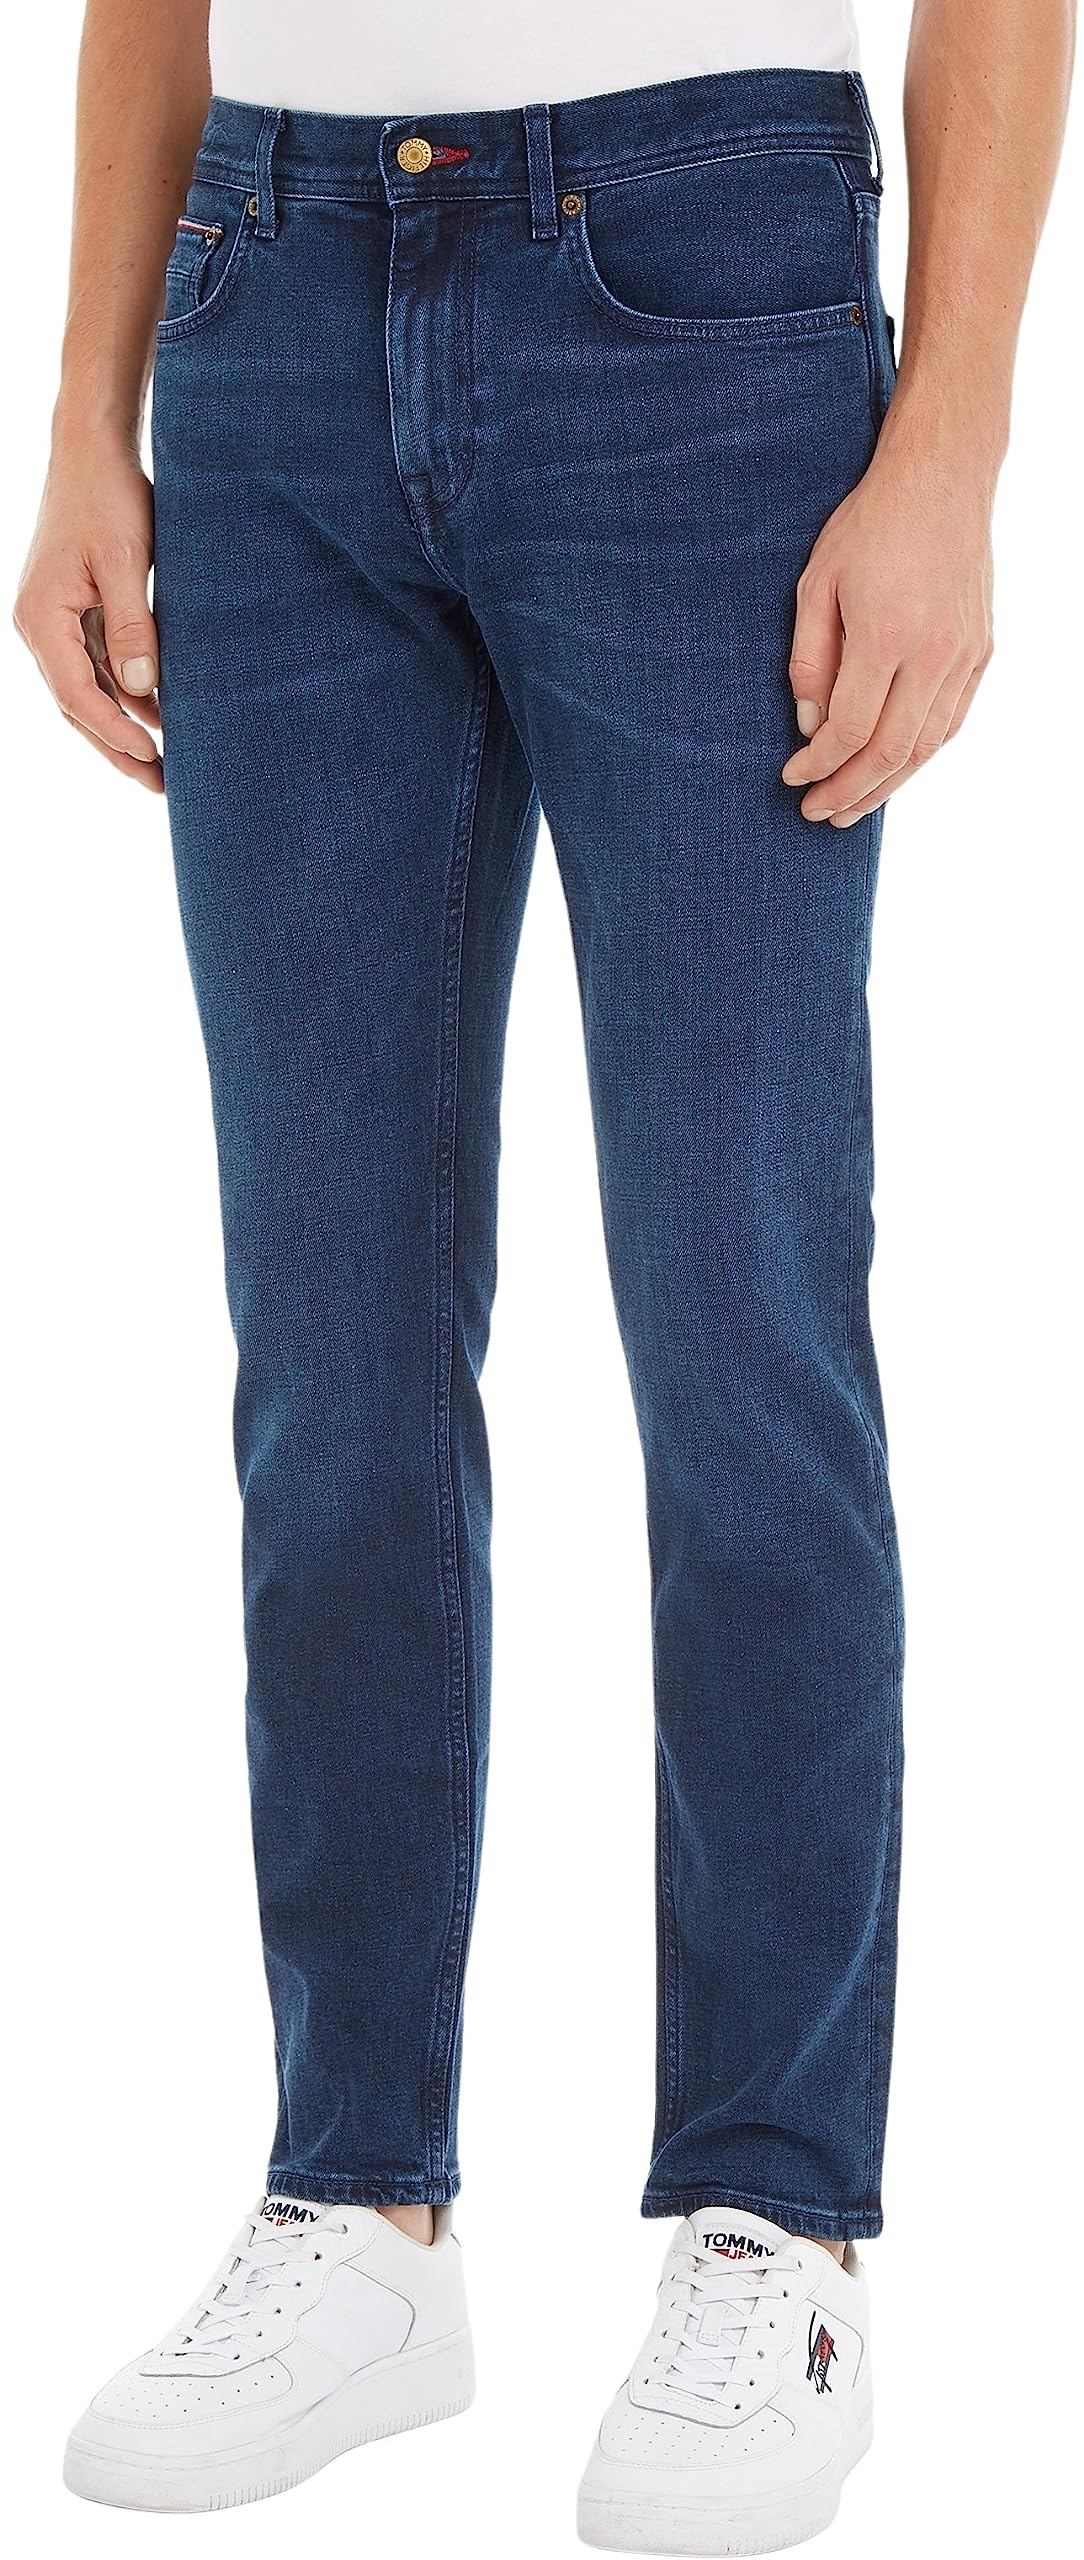 Tommy Hilfiger Herren Jeans Core Straight Denton Stretch, Blau (Bridger Indigo), 30W / 34L